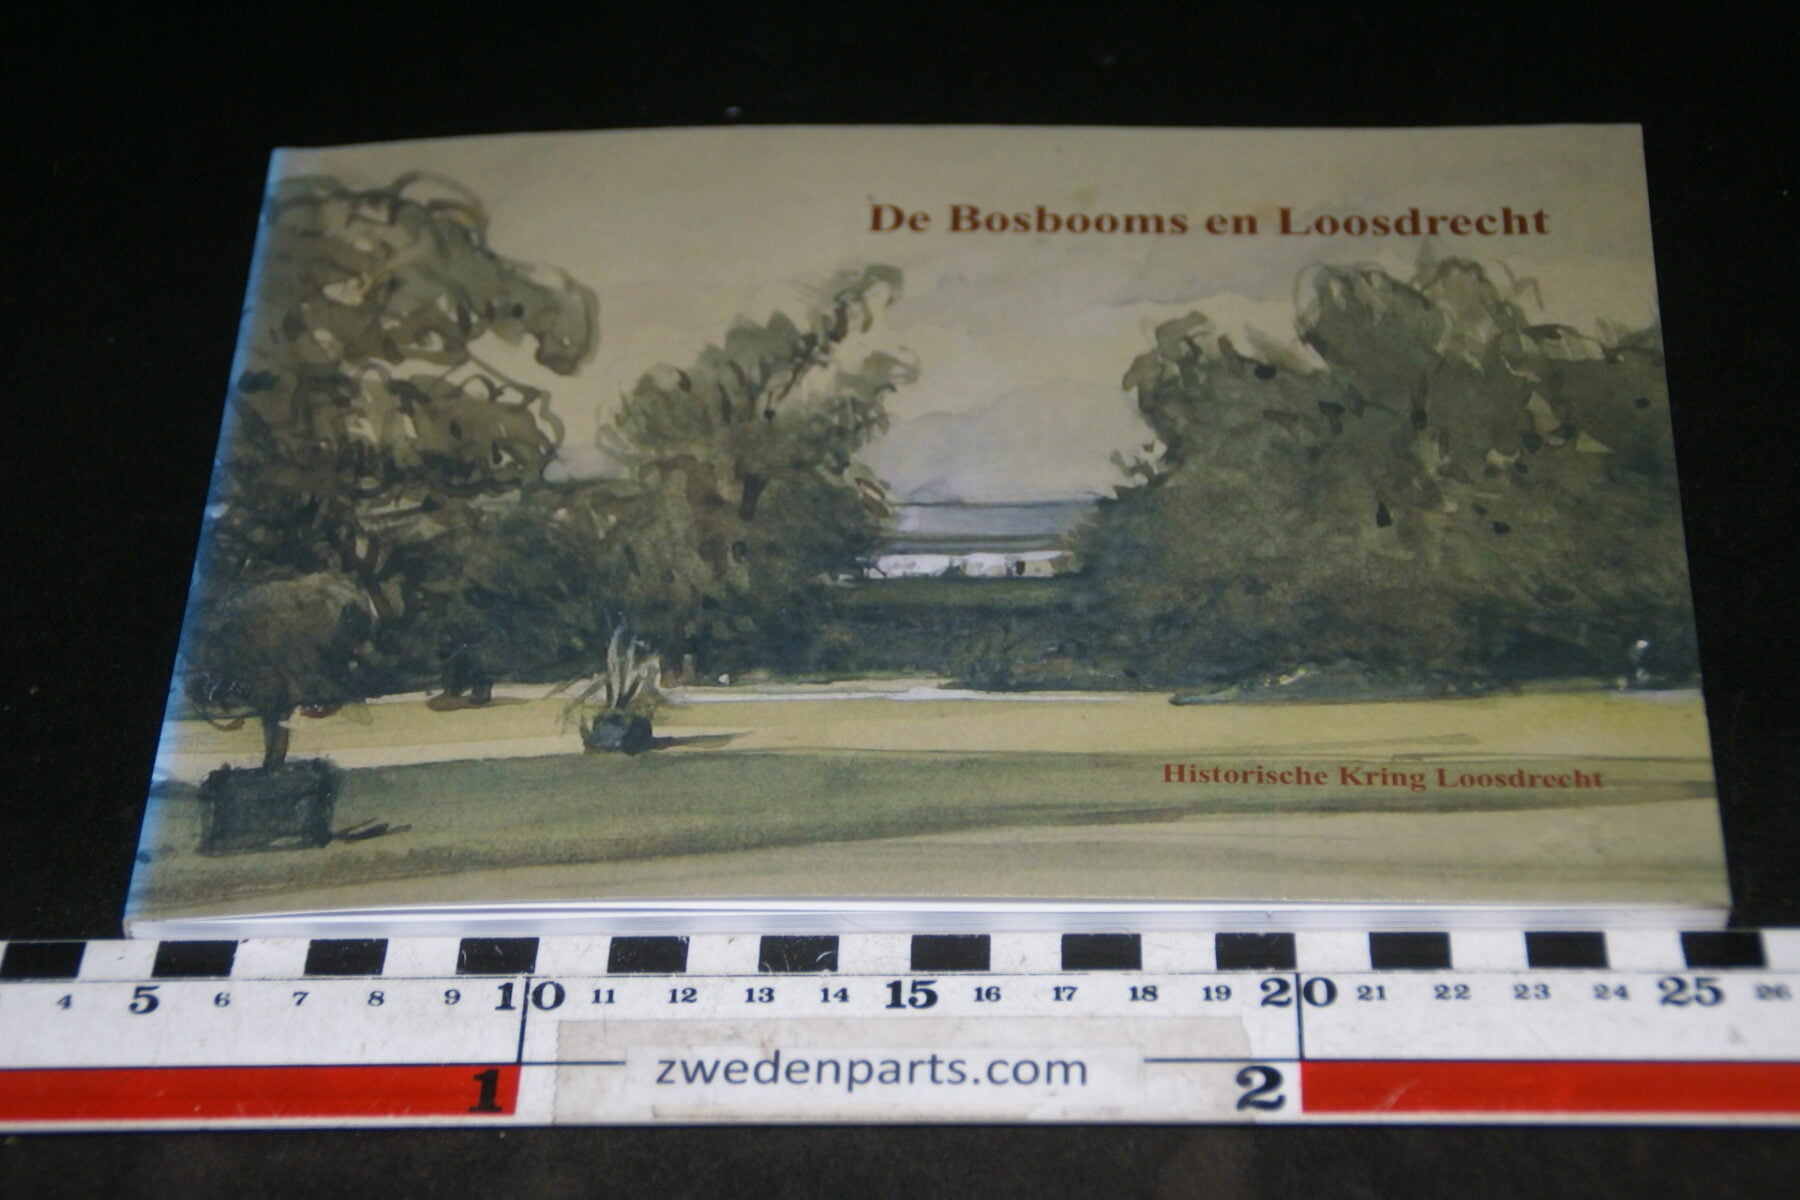 DSC06770 2004 boek De Bosbooms en Loosdrecht, te gast bij fam Hacke van Meijnden-0898737c